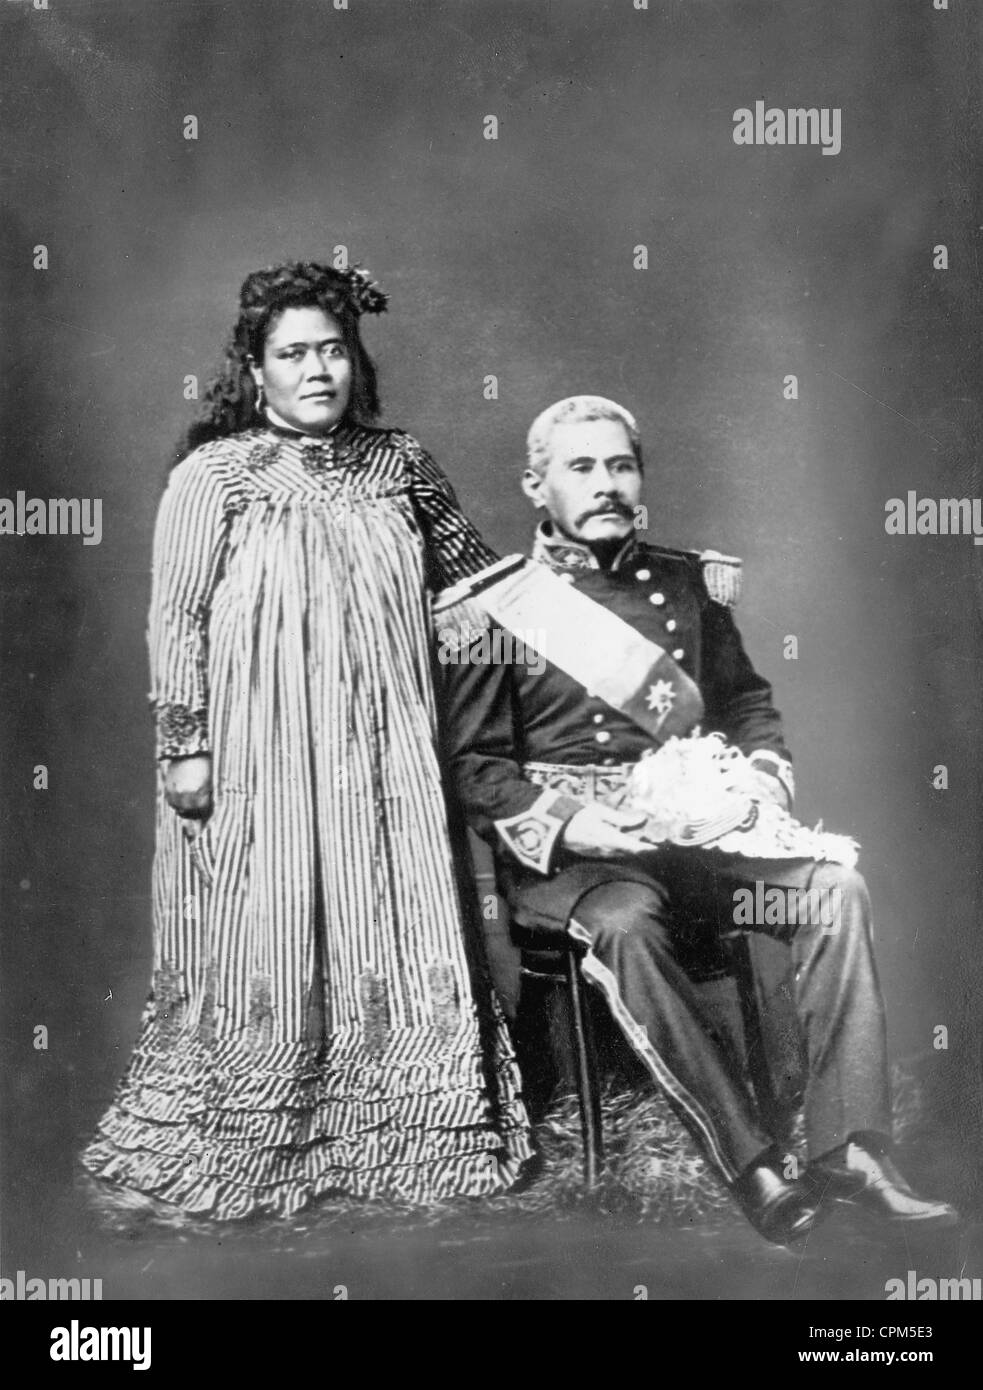 King samoa Black and White Stock Photos & Images - Alamy